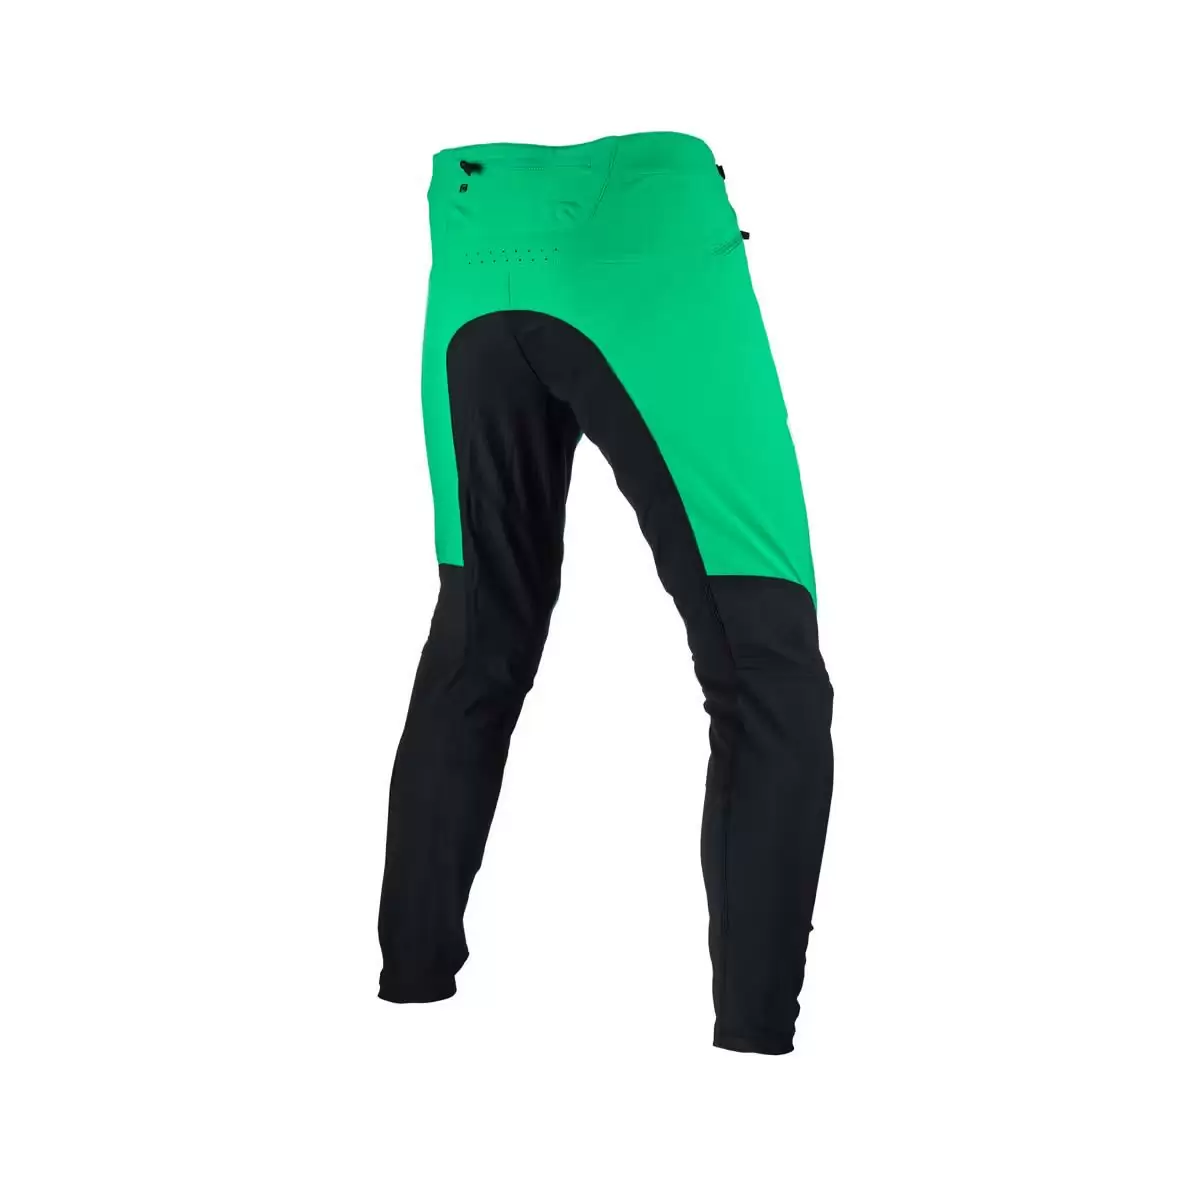 Gravity 4.0 MTB Long Pants Black/Green Size S #1